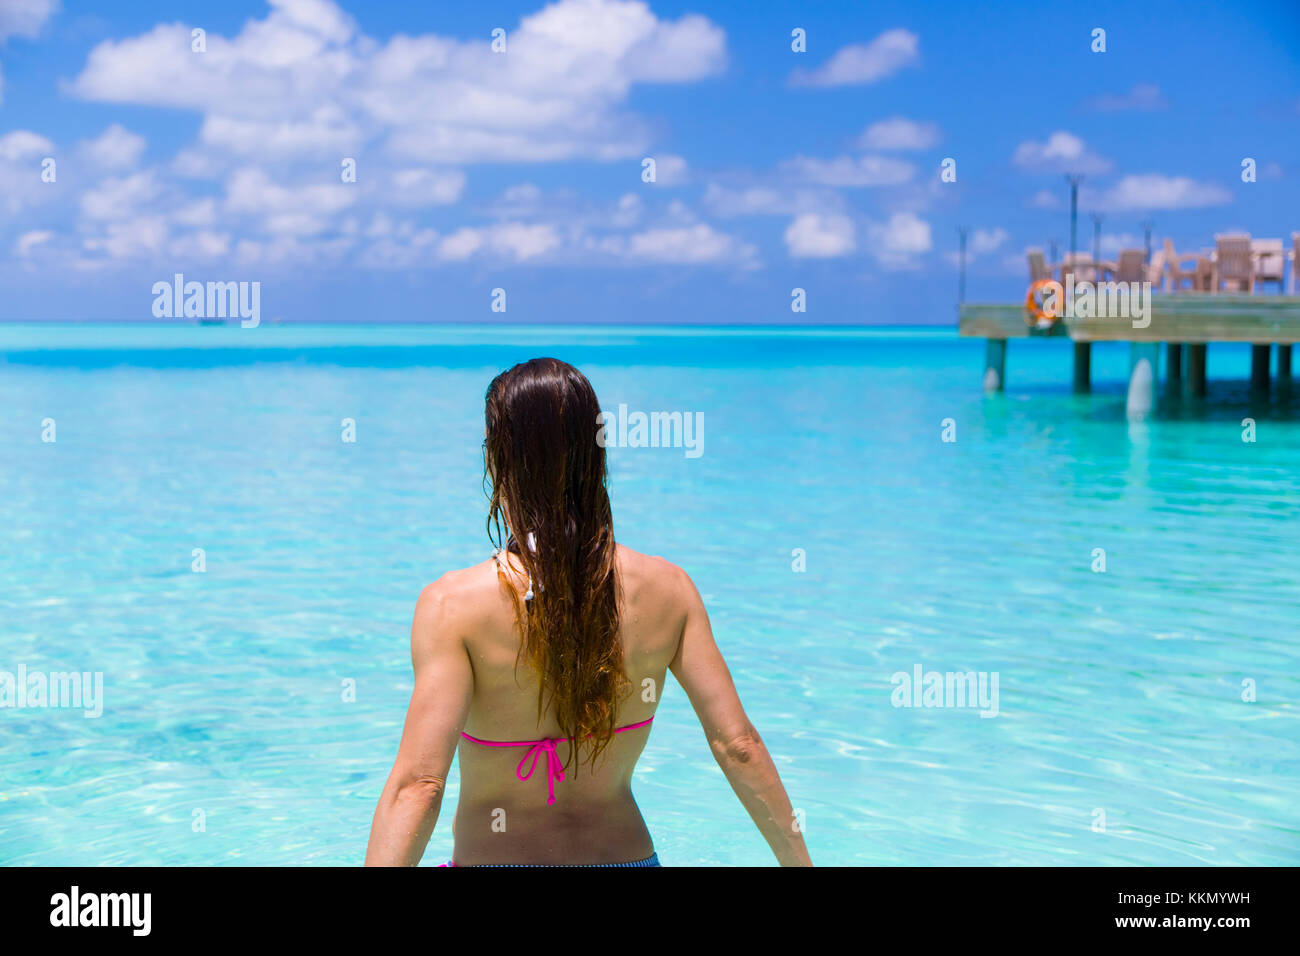 Vista posteriore di una donna in spiaggia che è in procinto di avere una vasca da bagno. Bella tonalità di blu e turchesi in paradiso. A sfondo c'è un molo Foto Stock